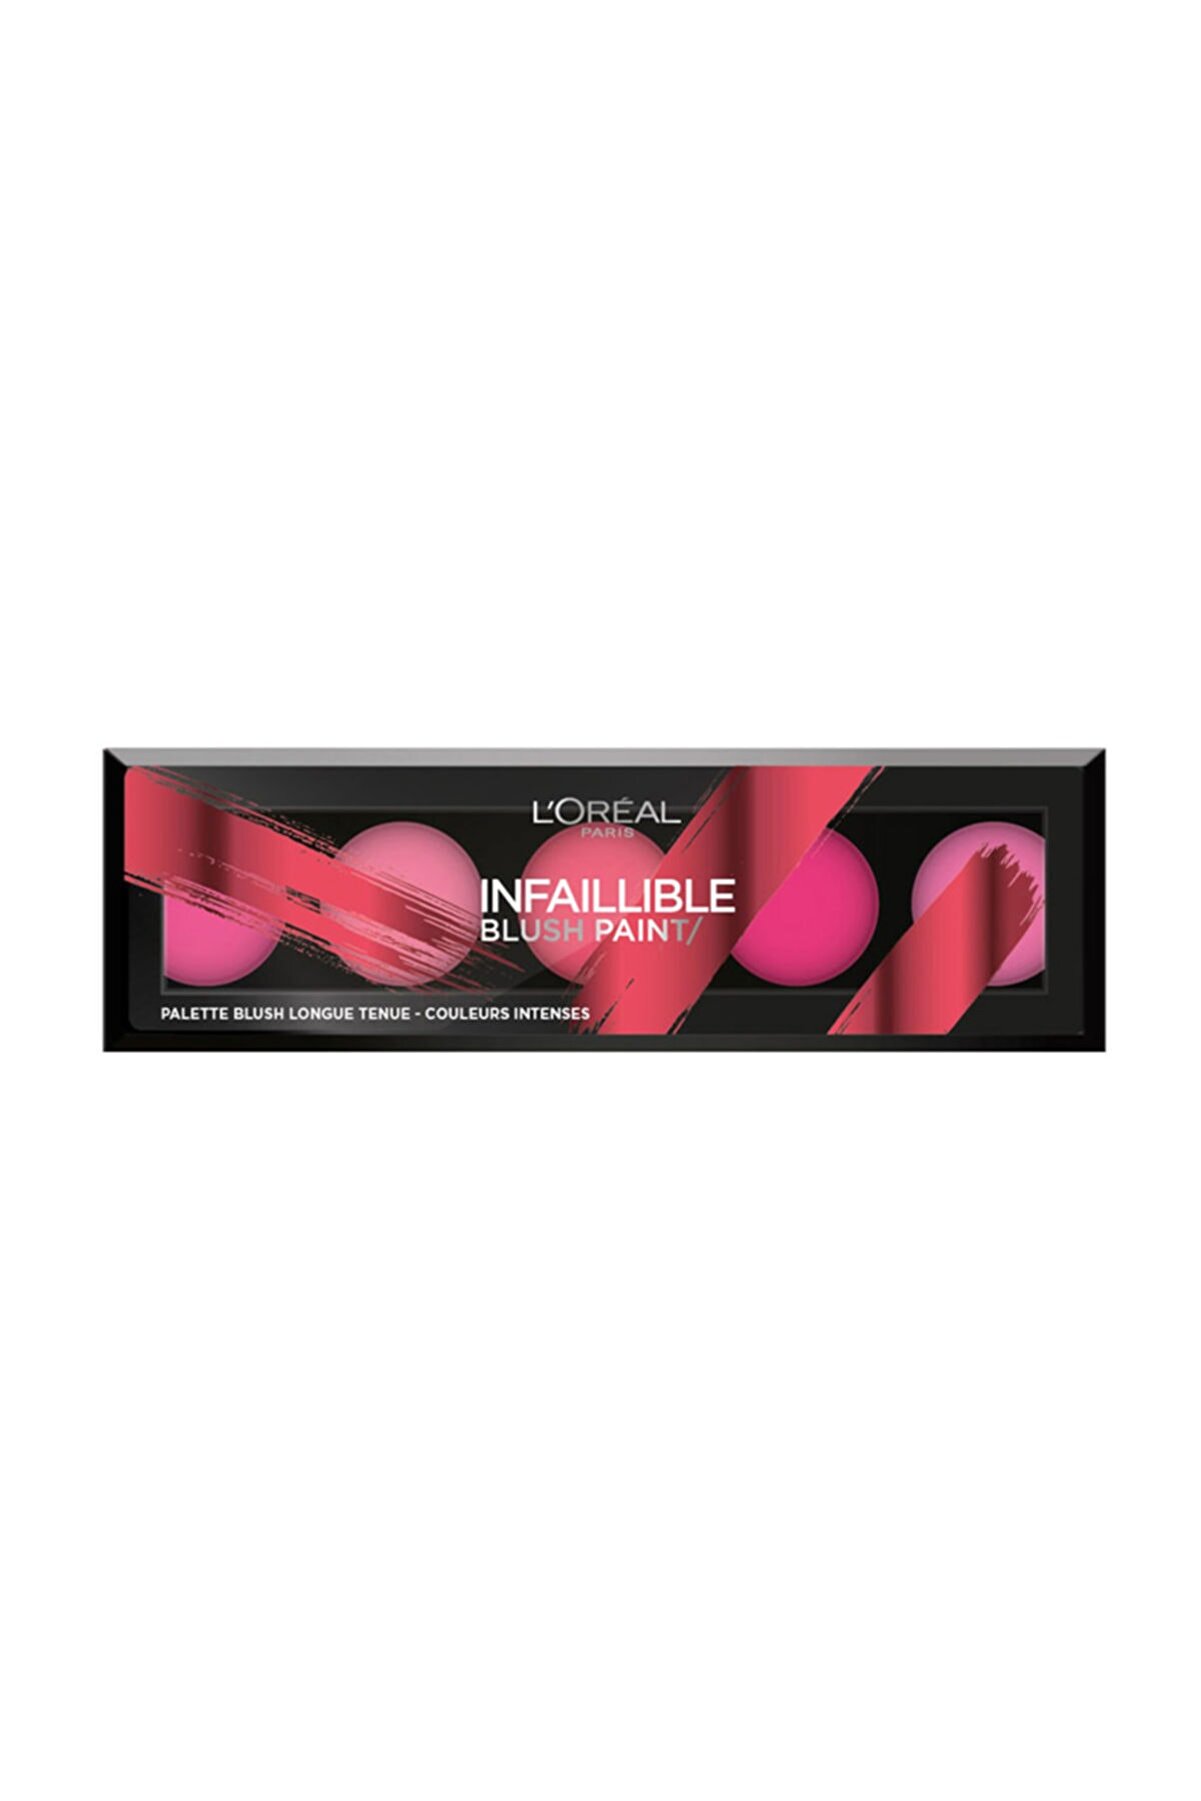 L'Oreal Paris Allık Paleti - Infallible Blush Palette 01 Pink 3600523354160